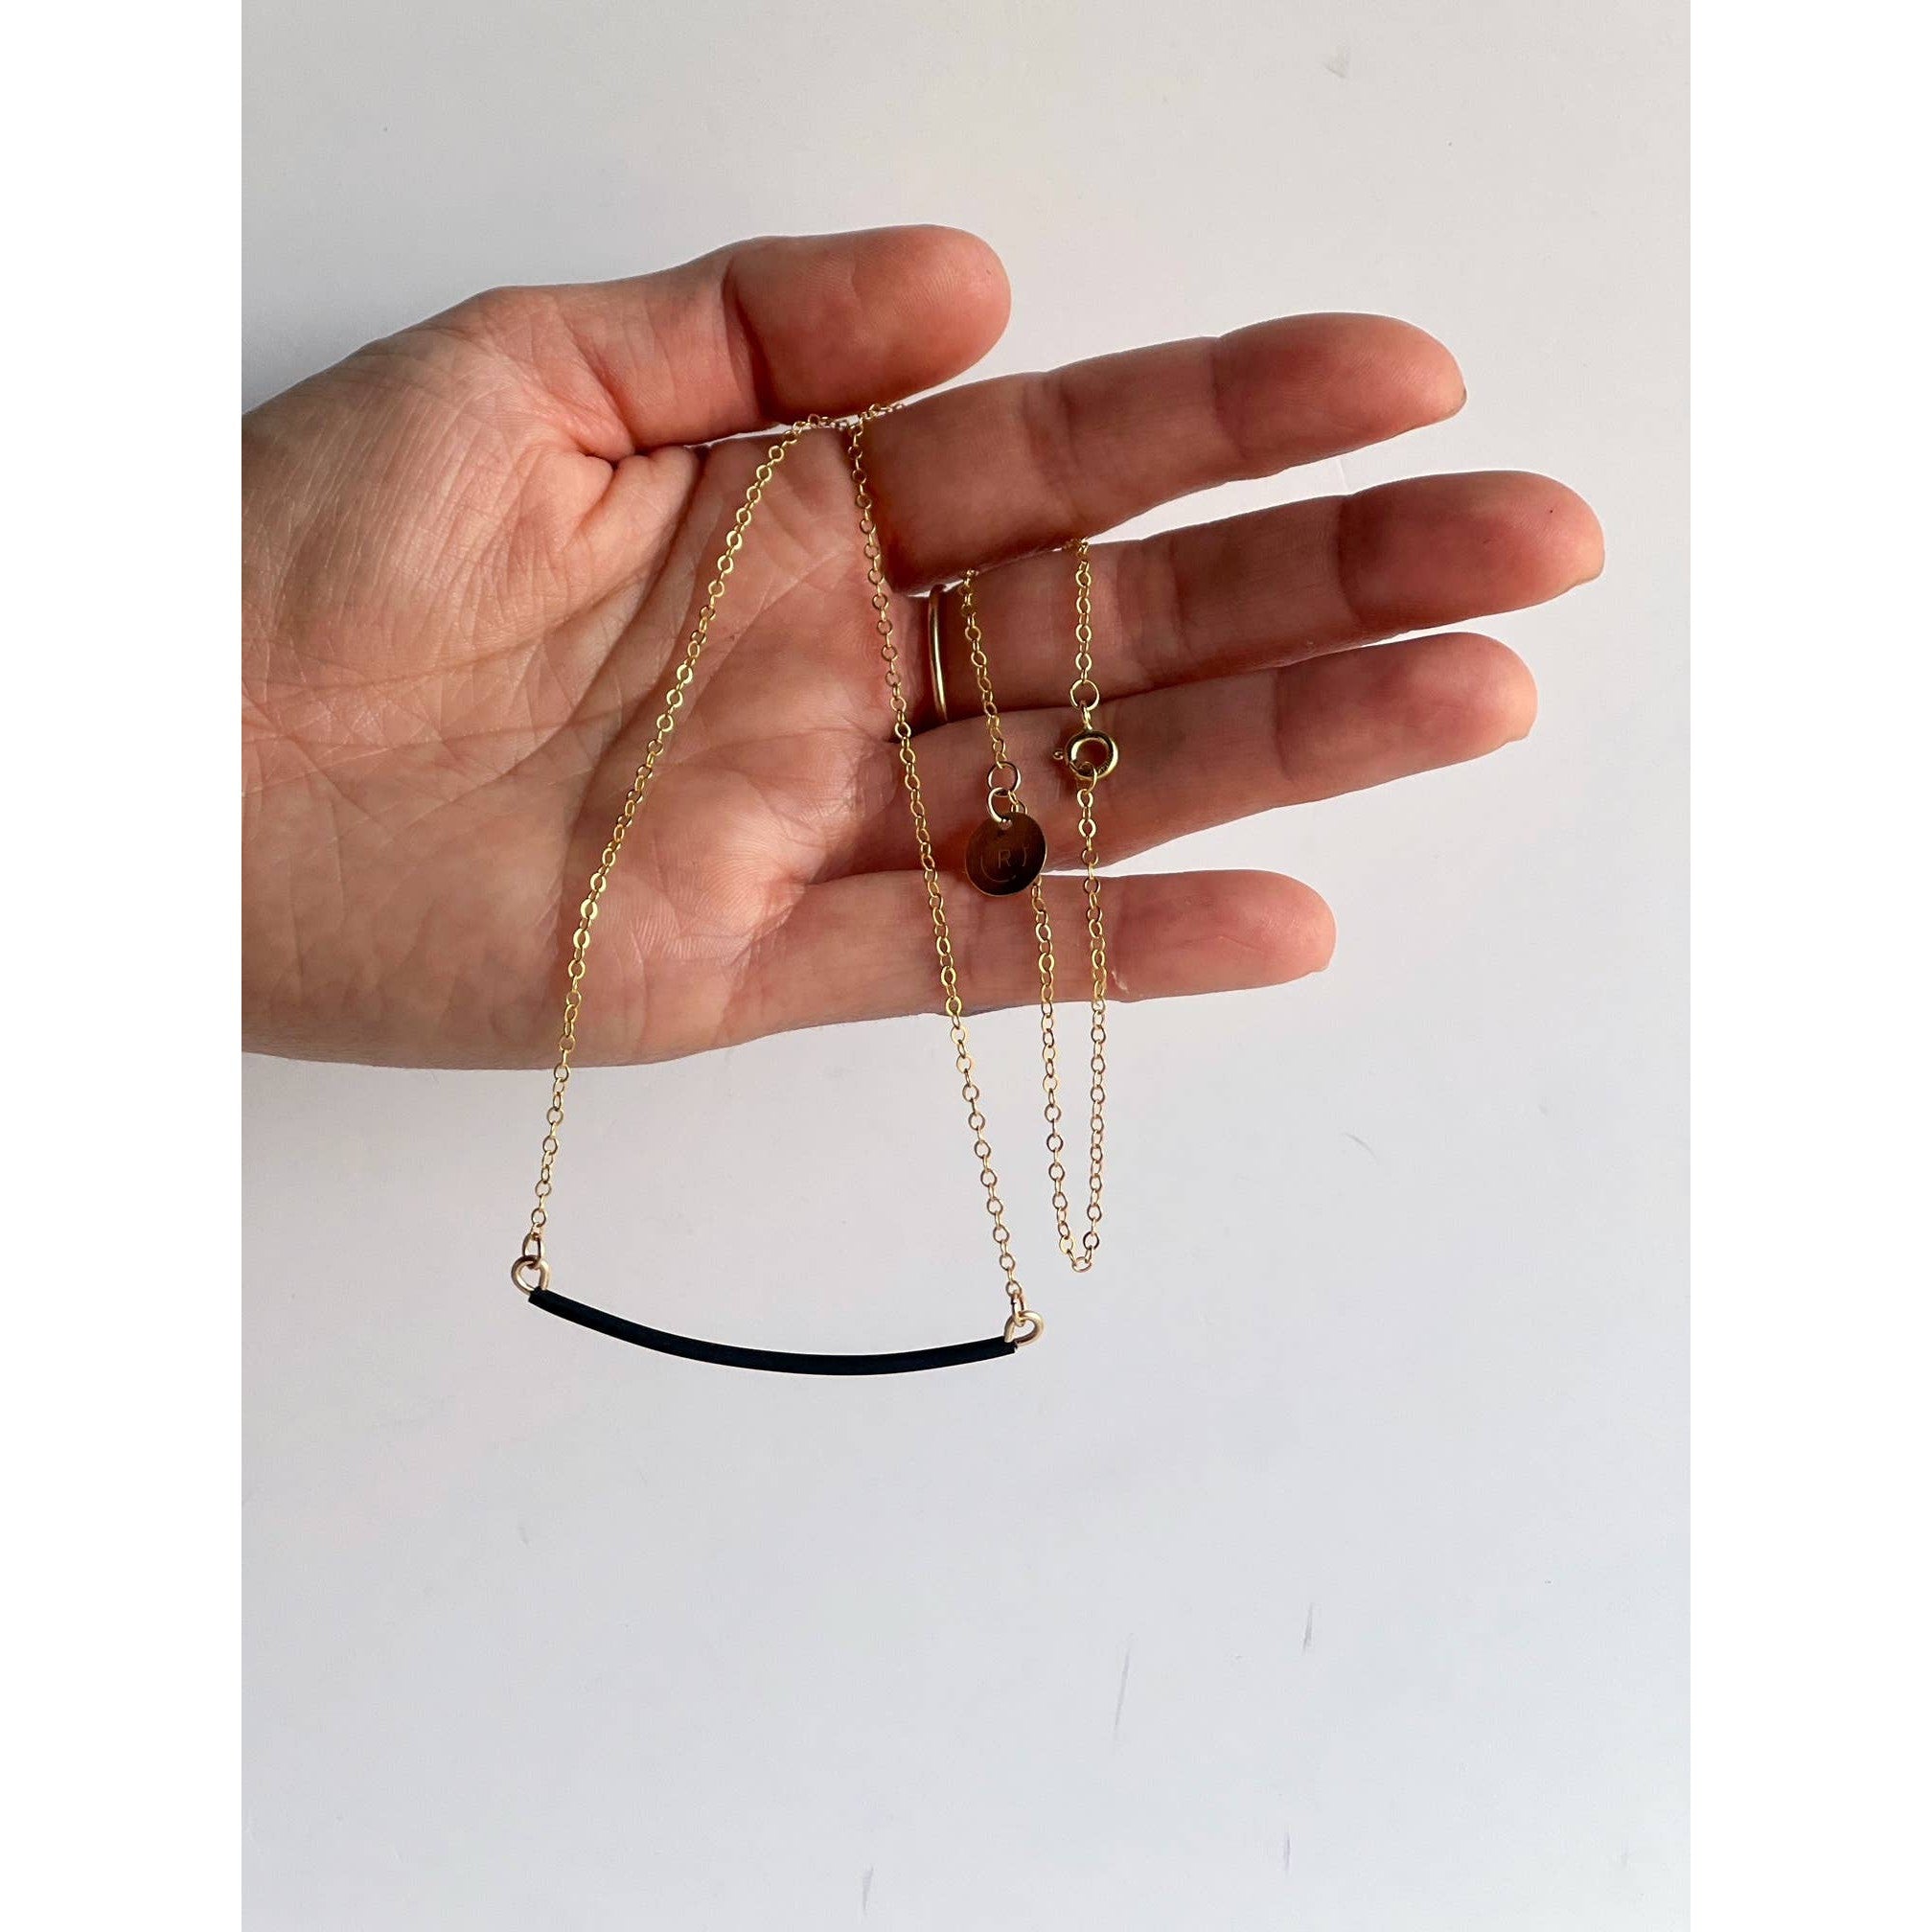 Nomad Necklace 14K Gold-filled Adjustable Length